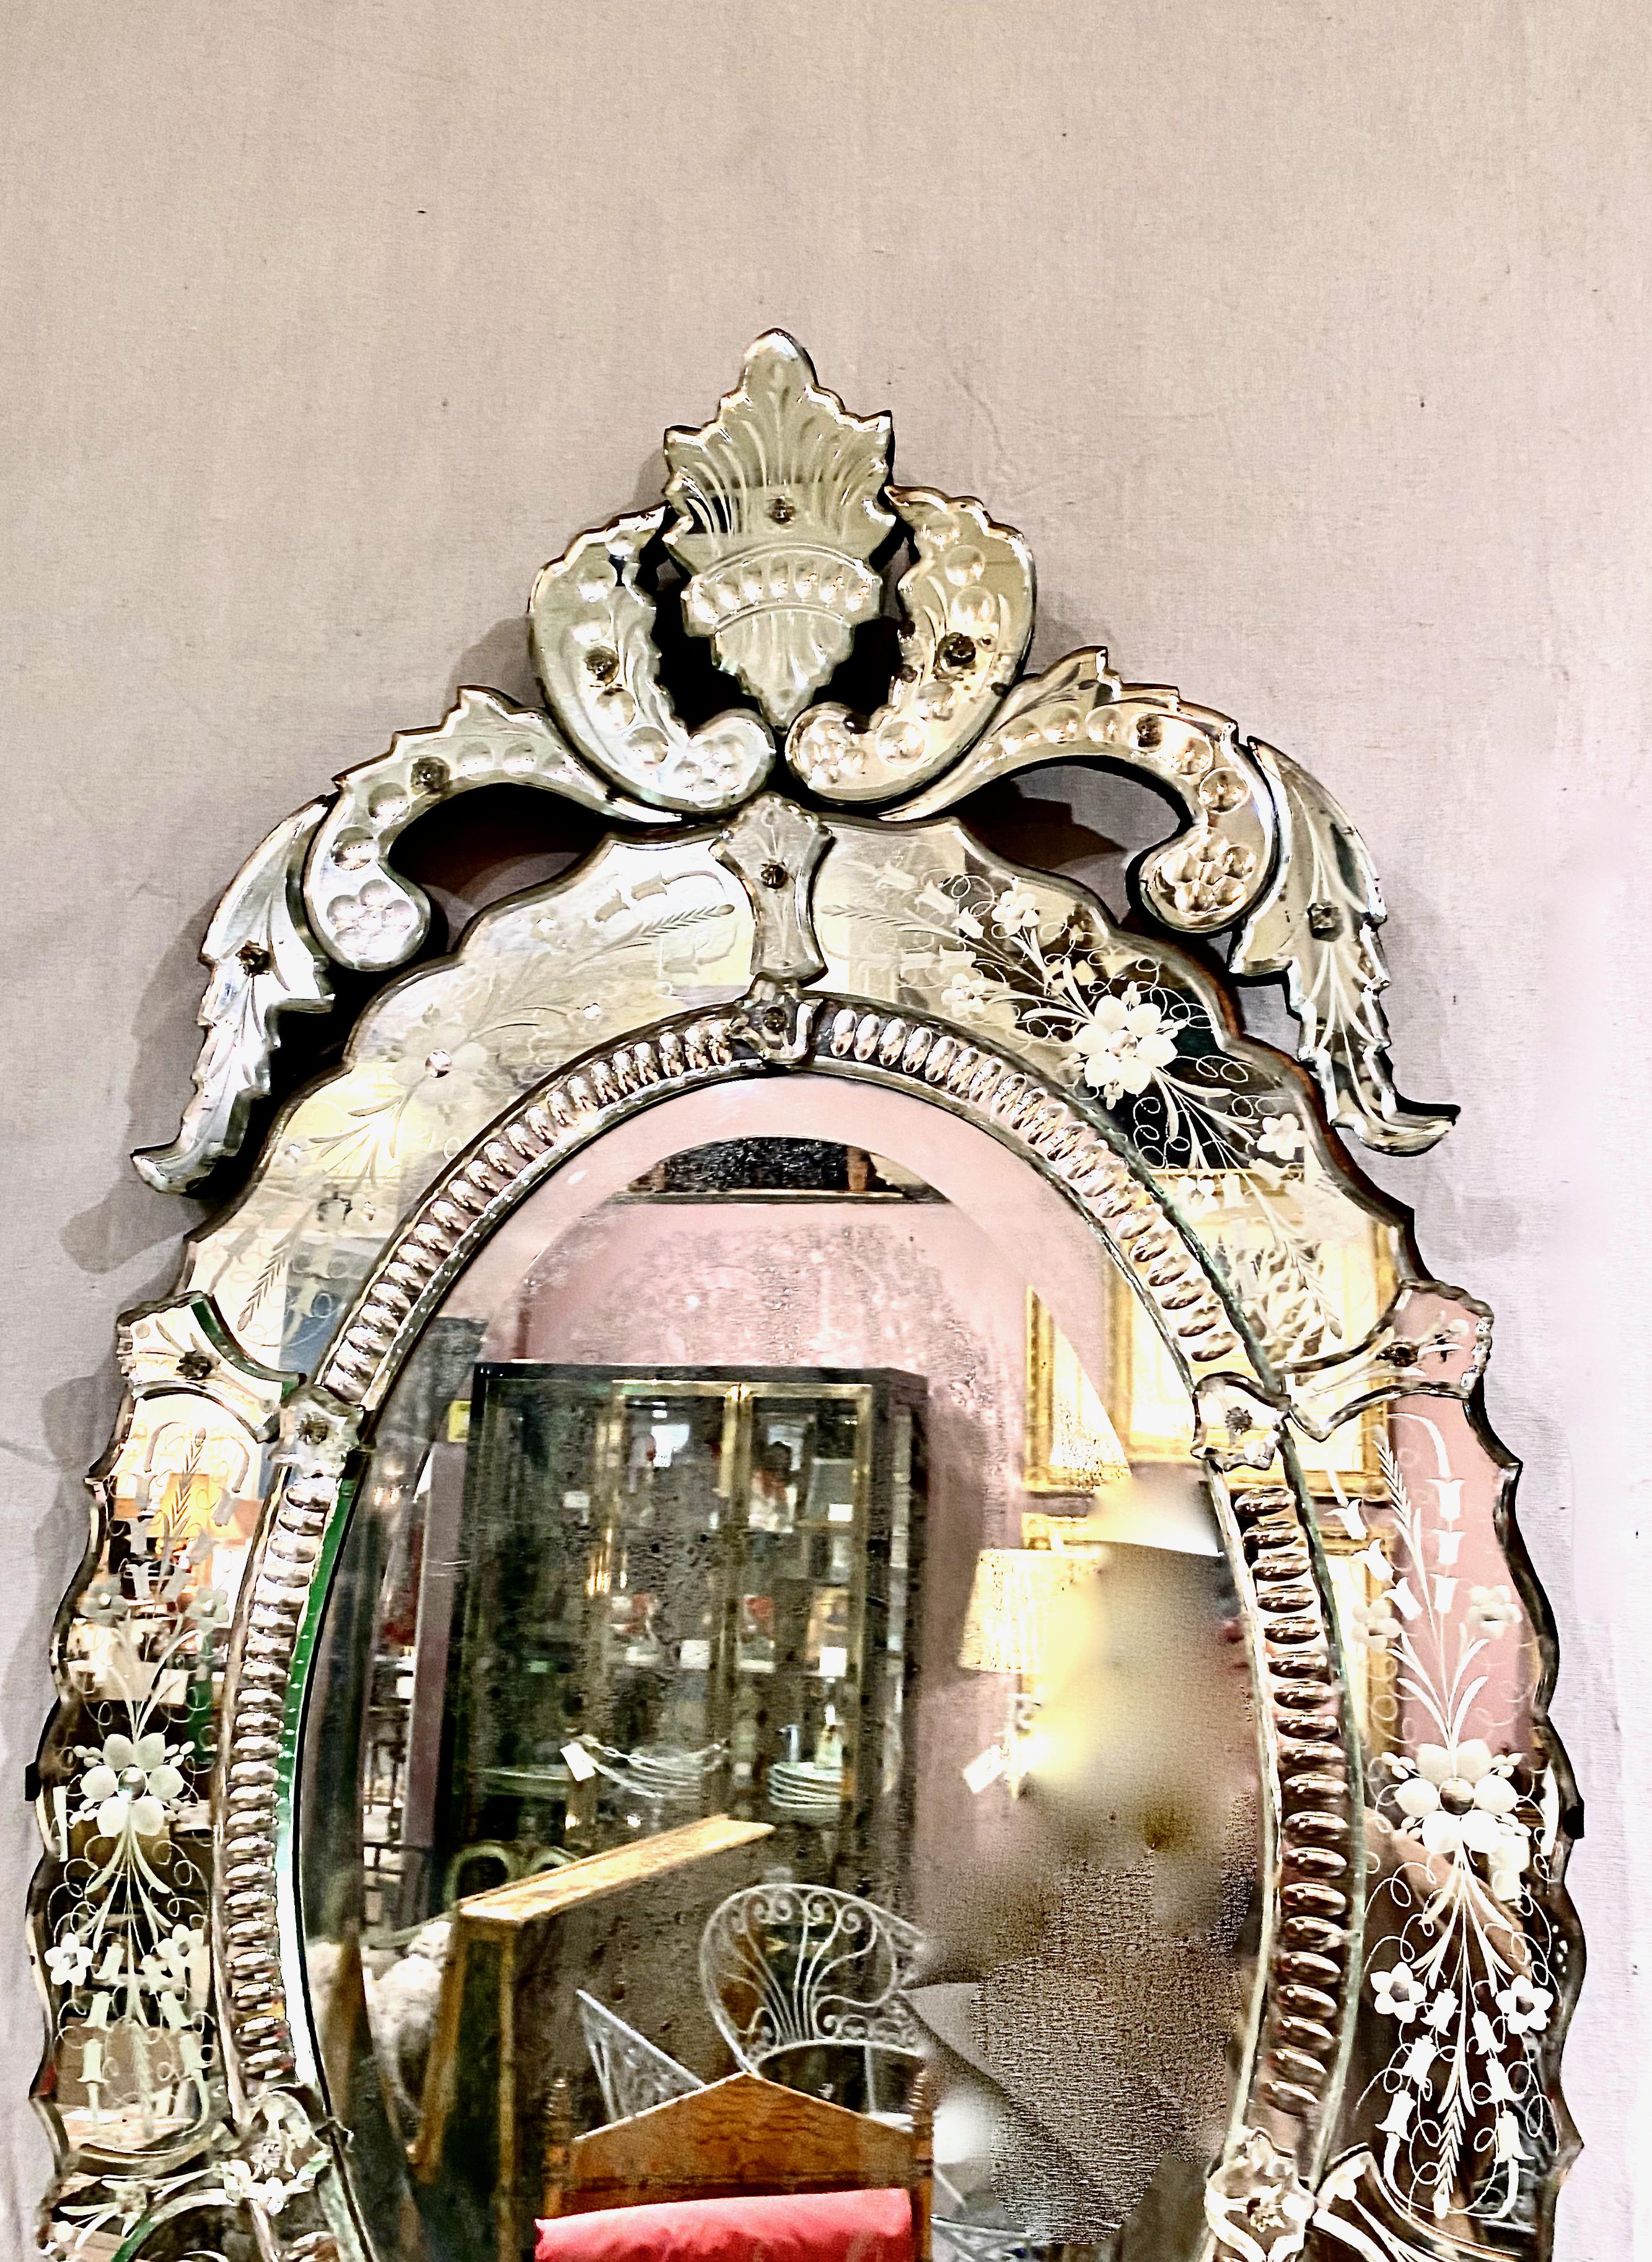 Il s'agit d'un bon exemple de miroir vénitien ovale du début du 20e siècle, magnifiquement détaillé avec un miroir découpé et gravé entourant la plaque centrale du miroir. Le corps ovale est surmonté d'une couronne de feuilles d'acanthe découpées.